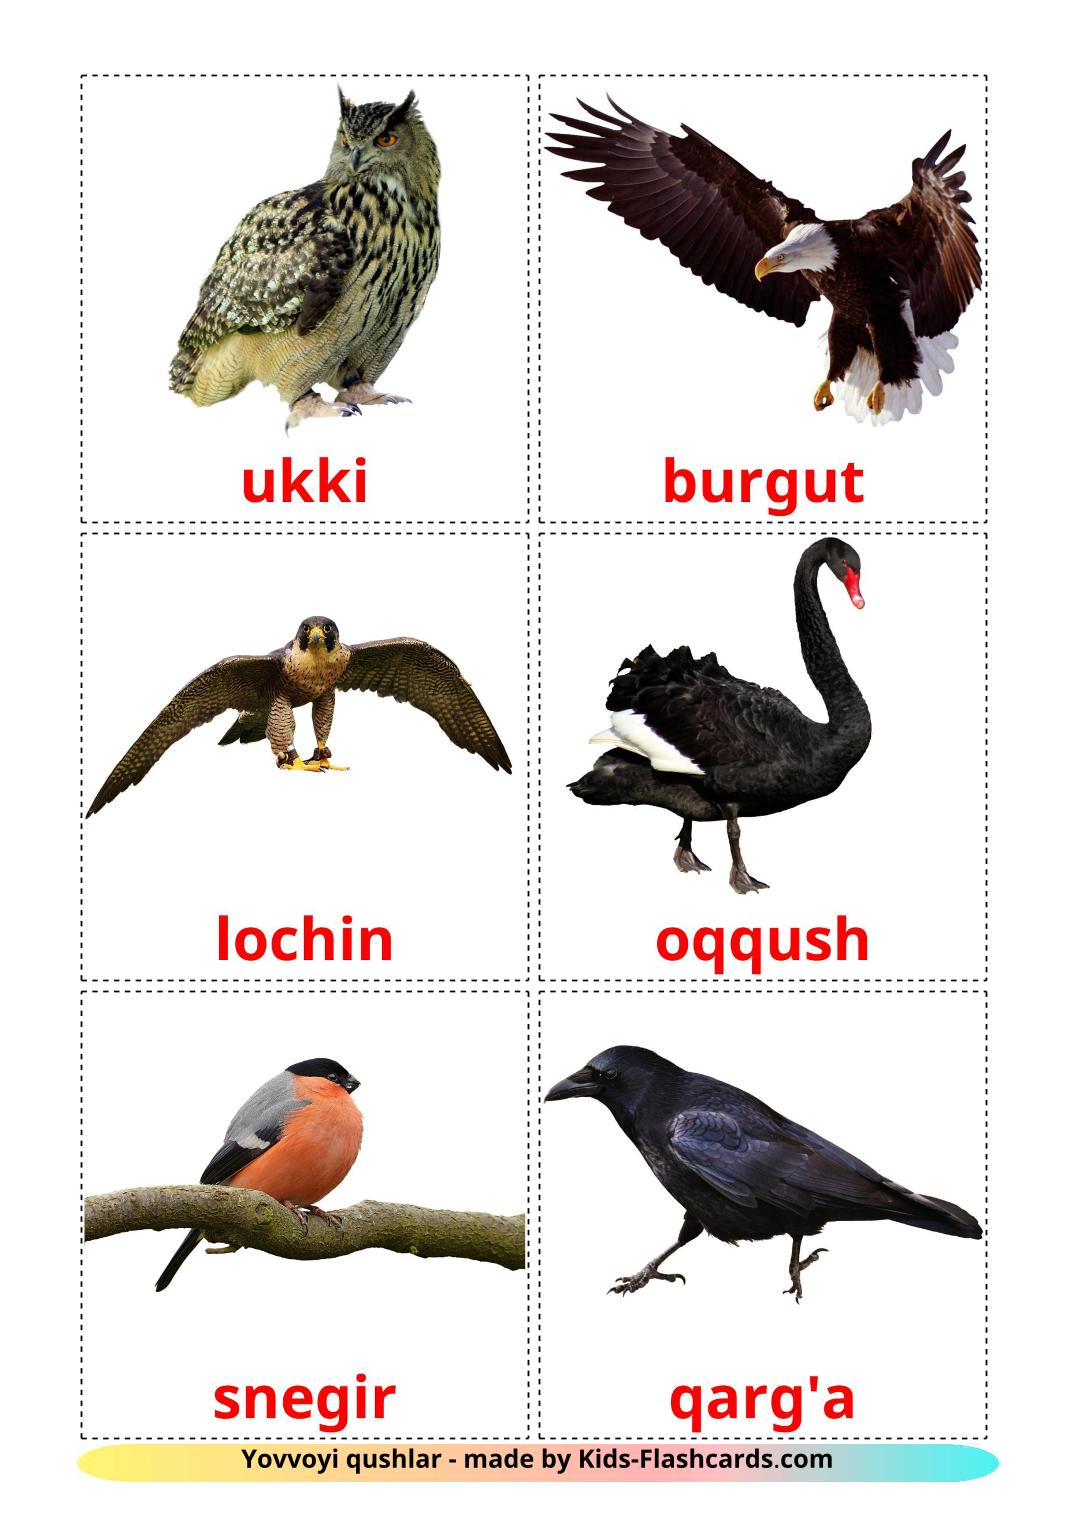 Les Oiseaux Sauvages - 18 Flashcards ouzbek imprimables gratuitement